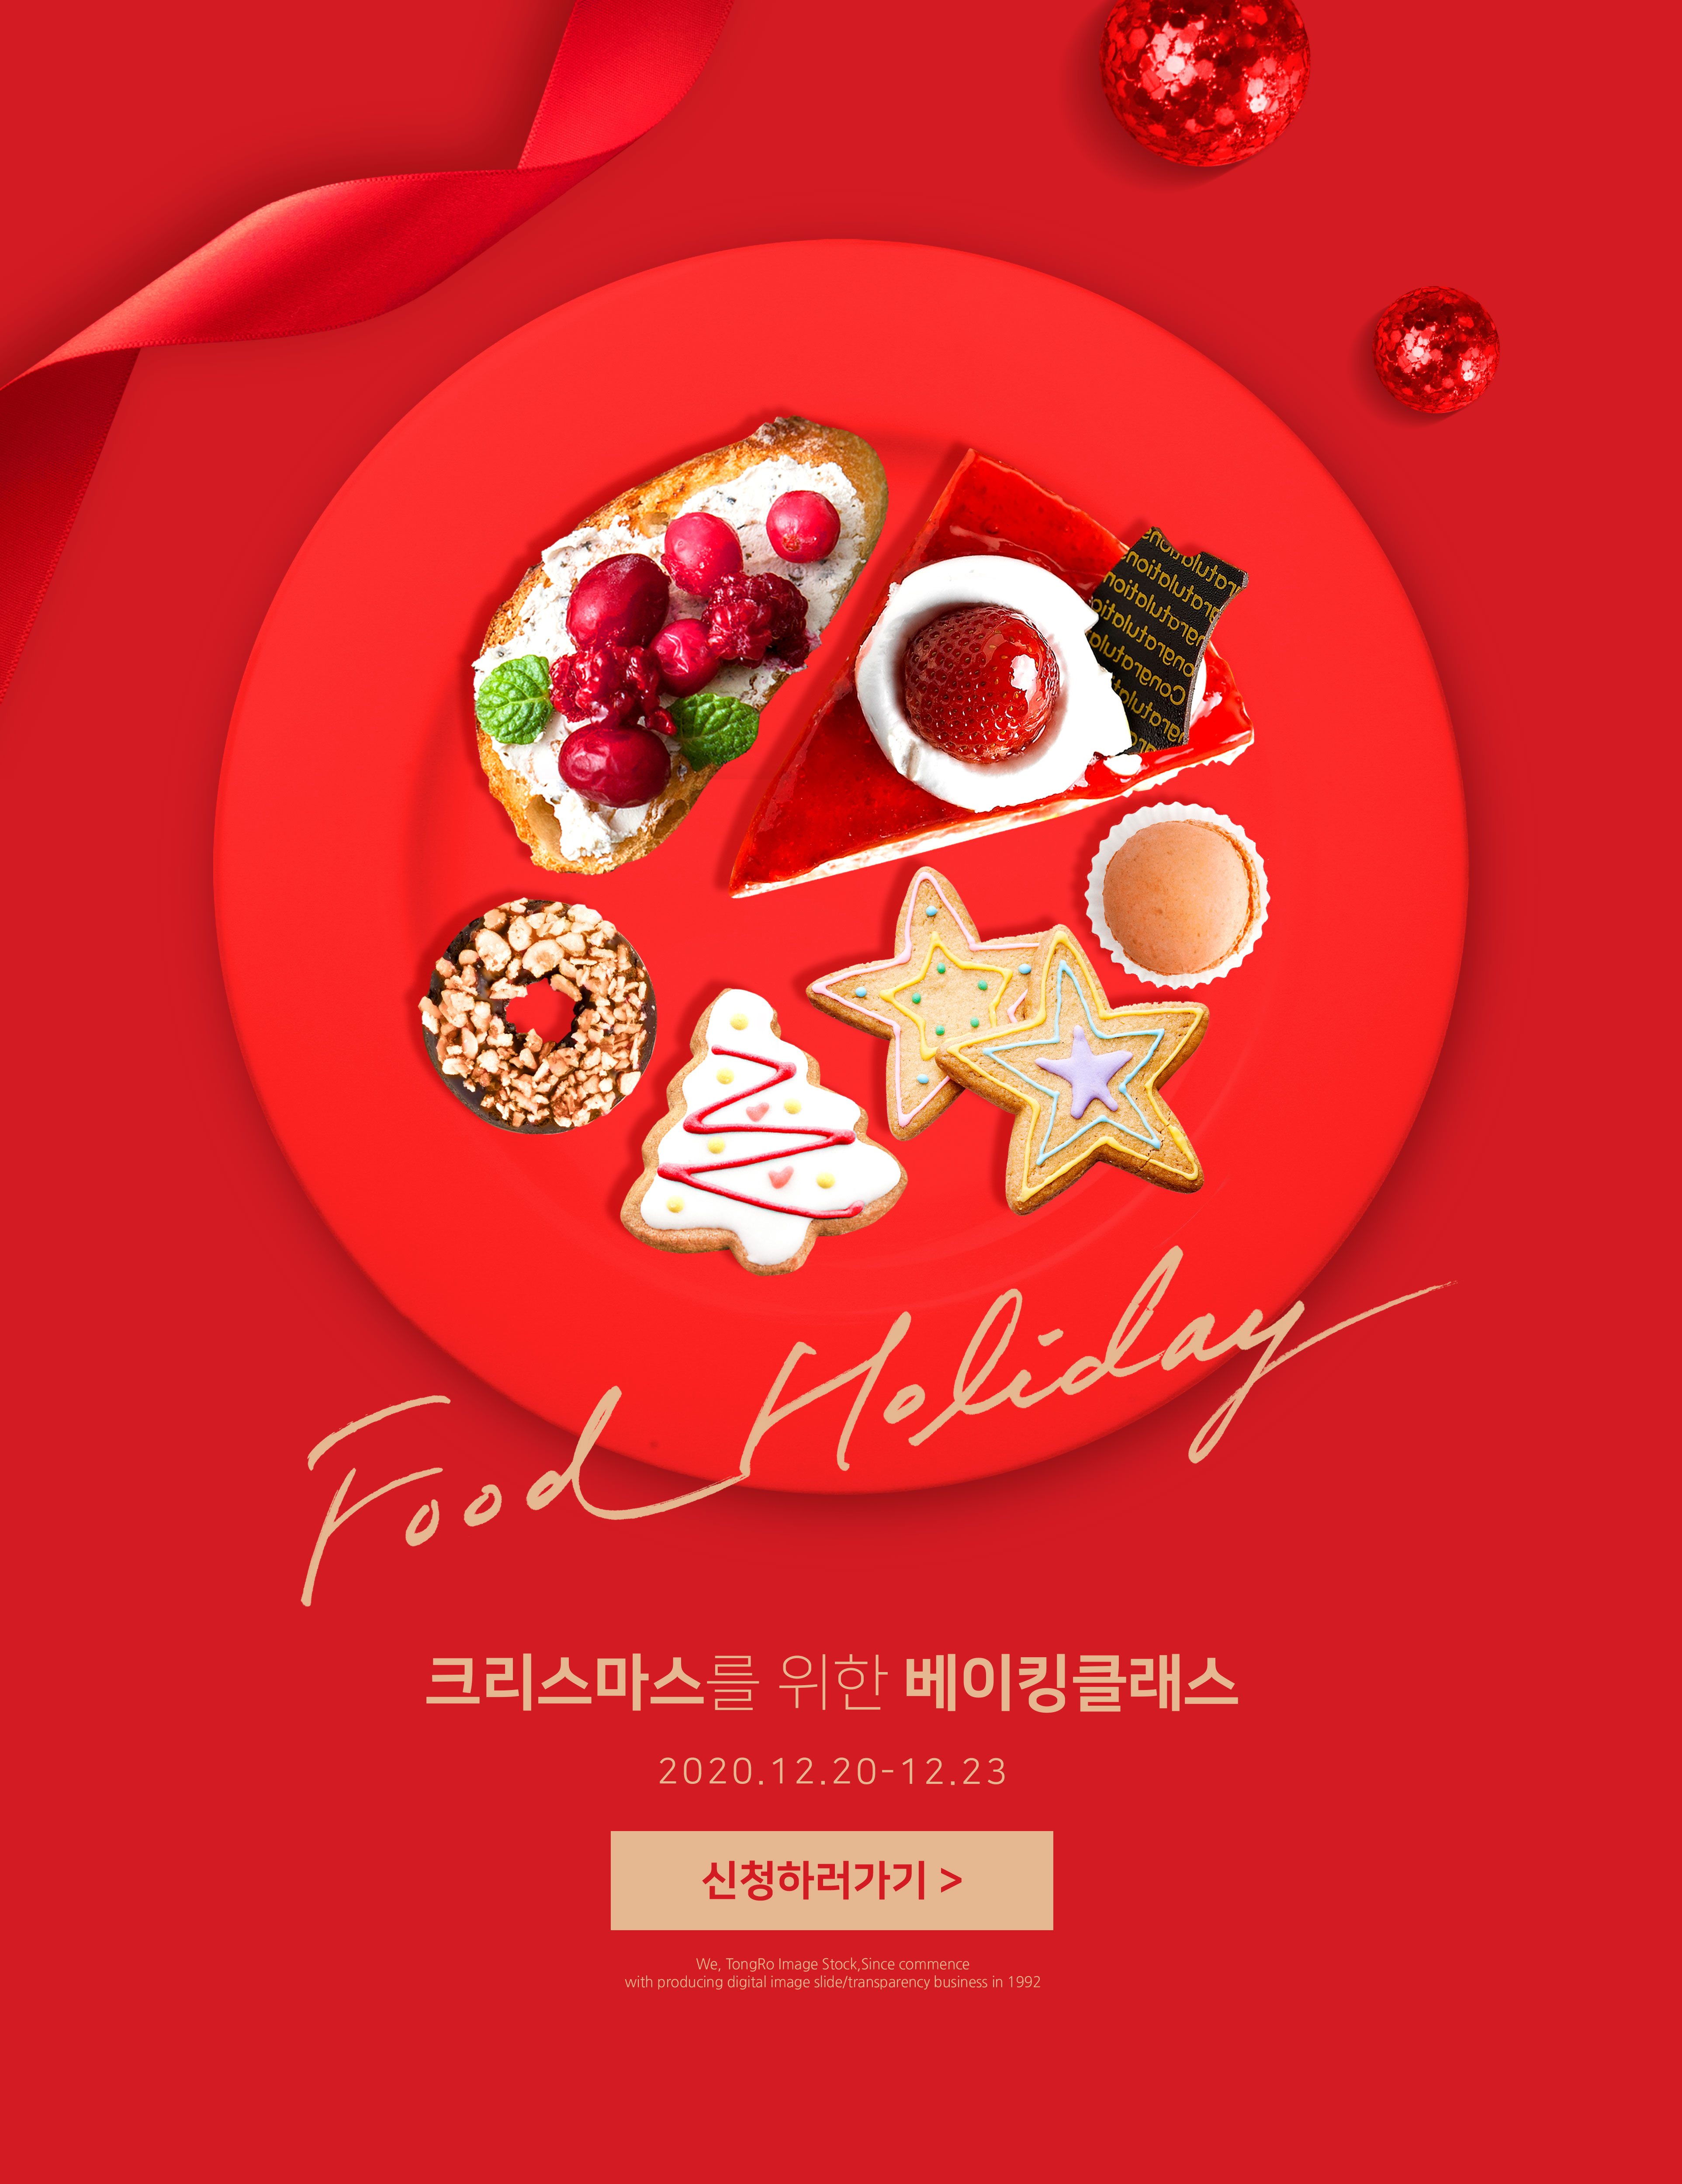 大红色圣诞美食甜点食品广告海报设计模板插图